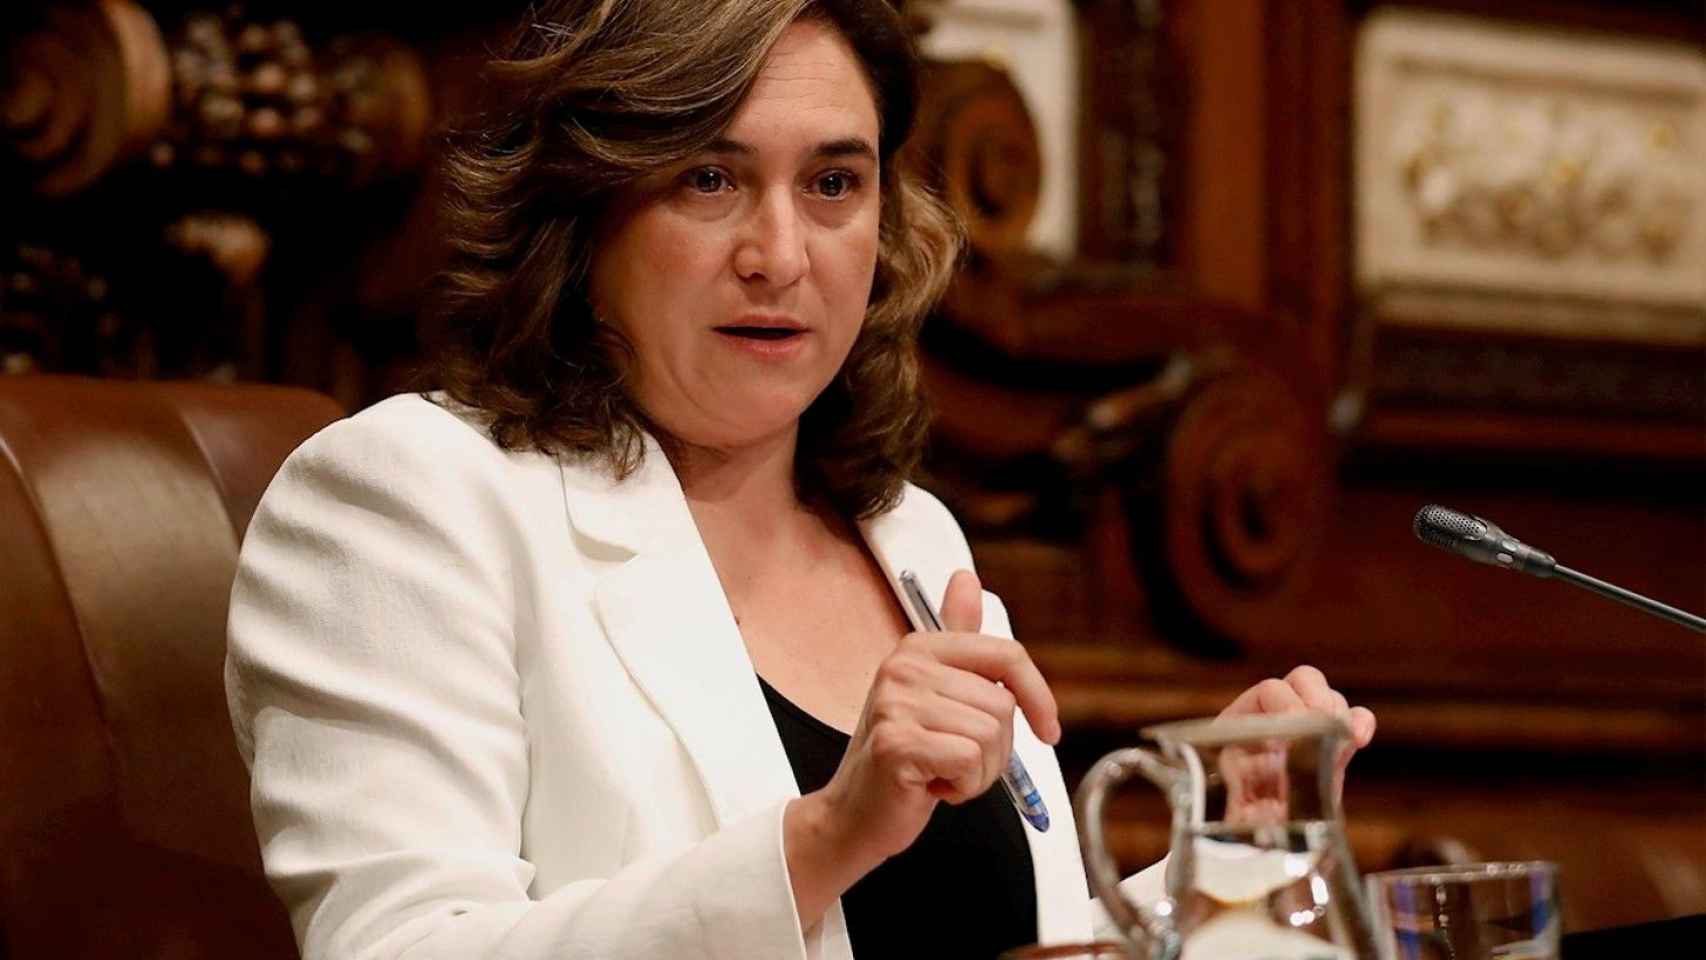 La alcaldesa de Barcelona, Ada Colau / EFE